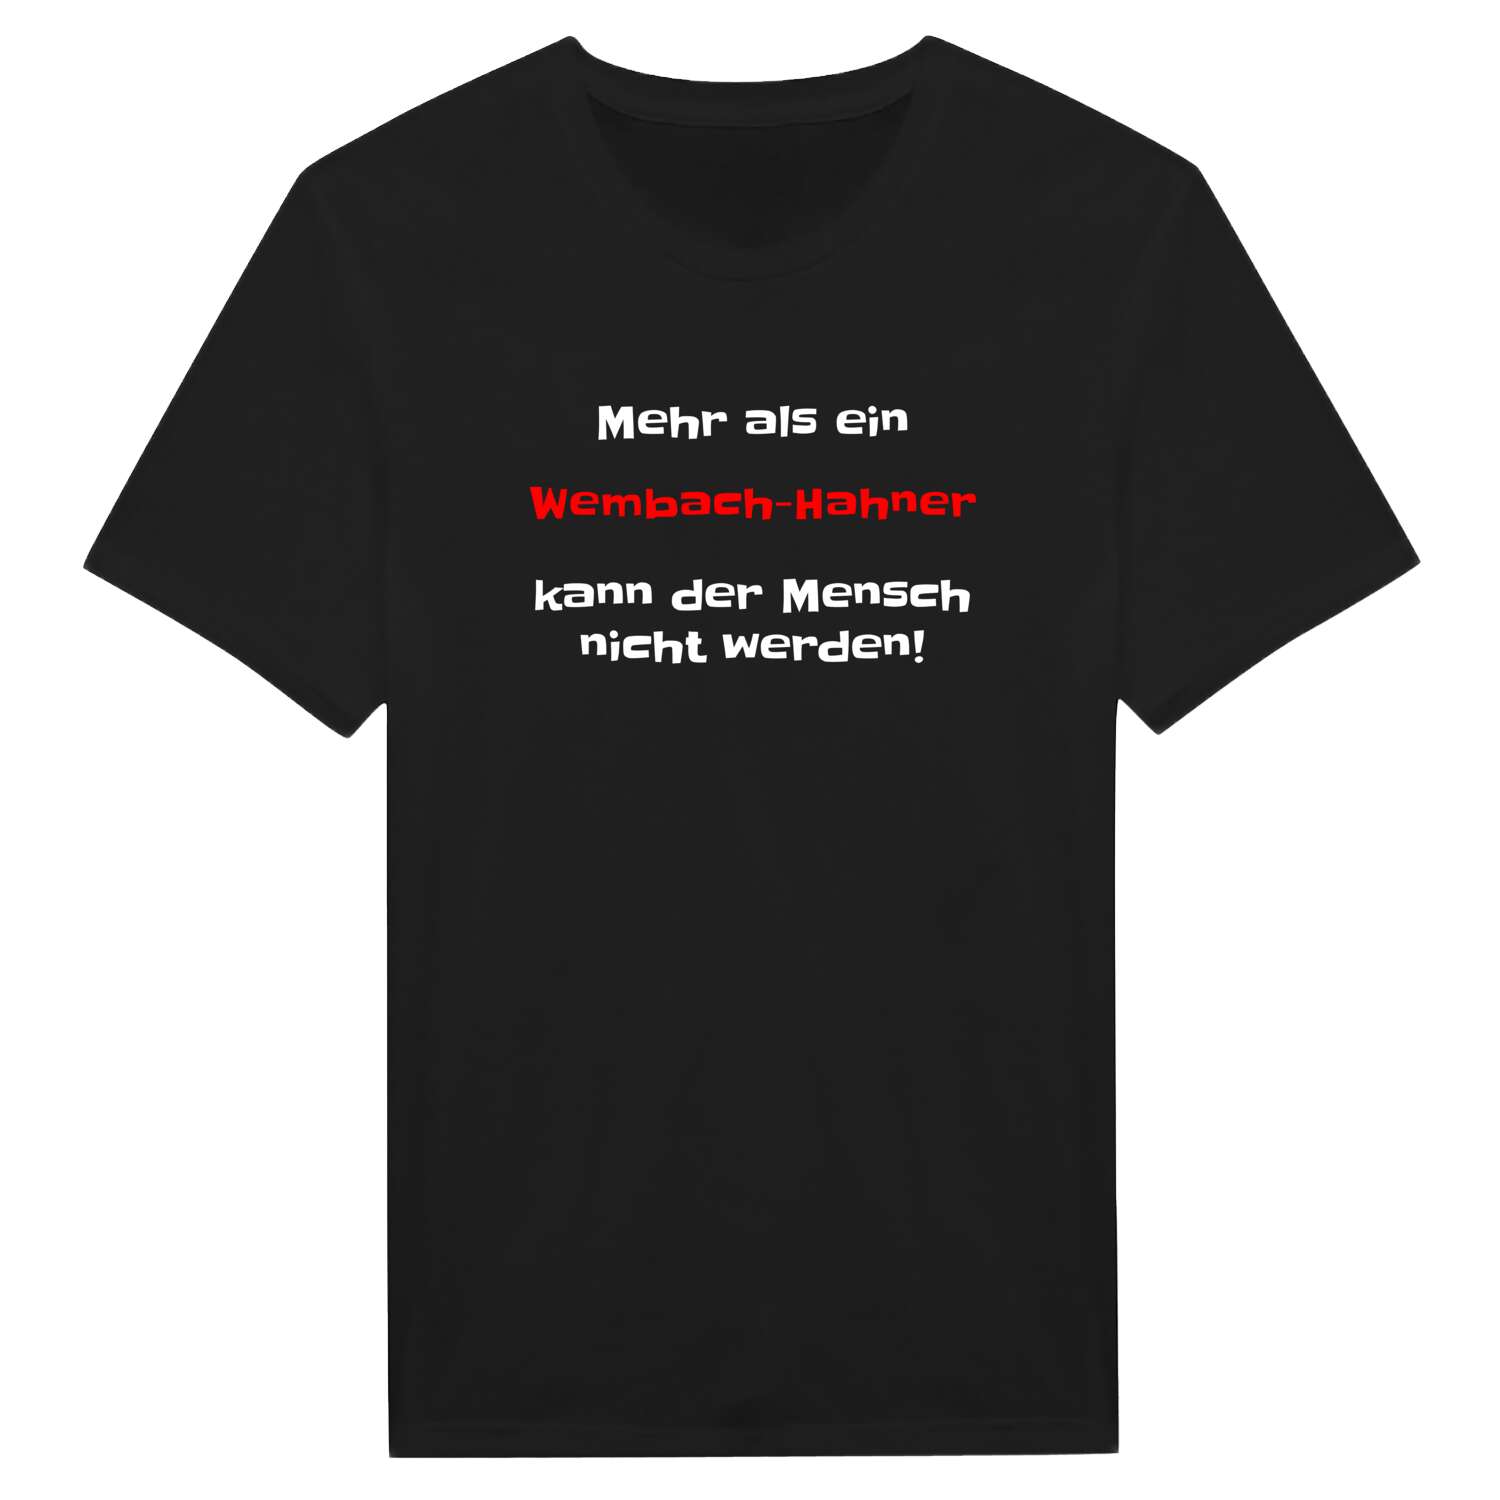 Wembach-Hahn T-Shirt »Mehr als ein«